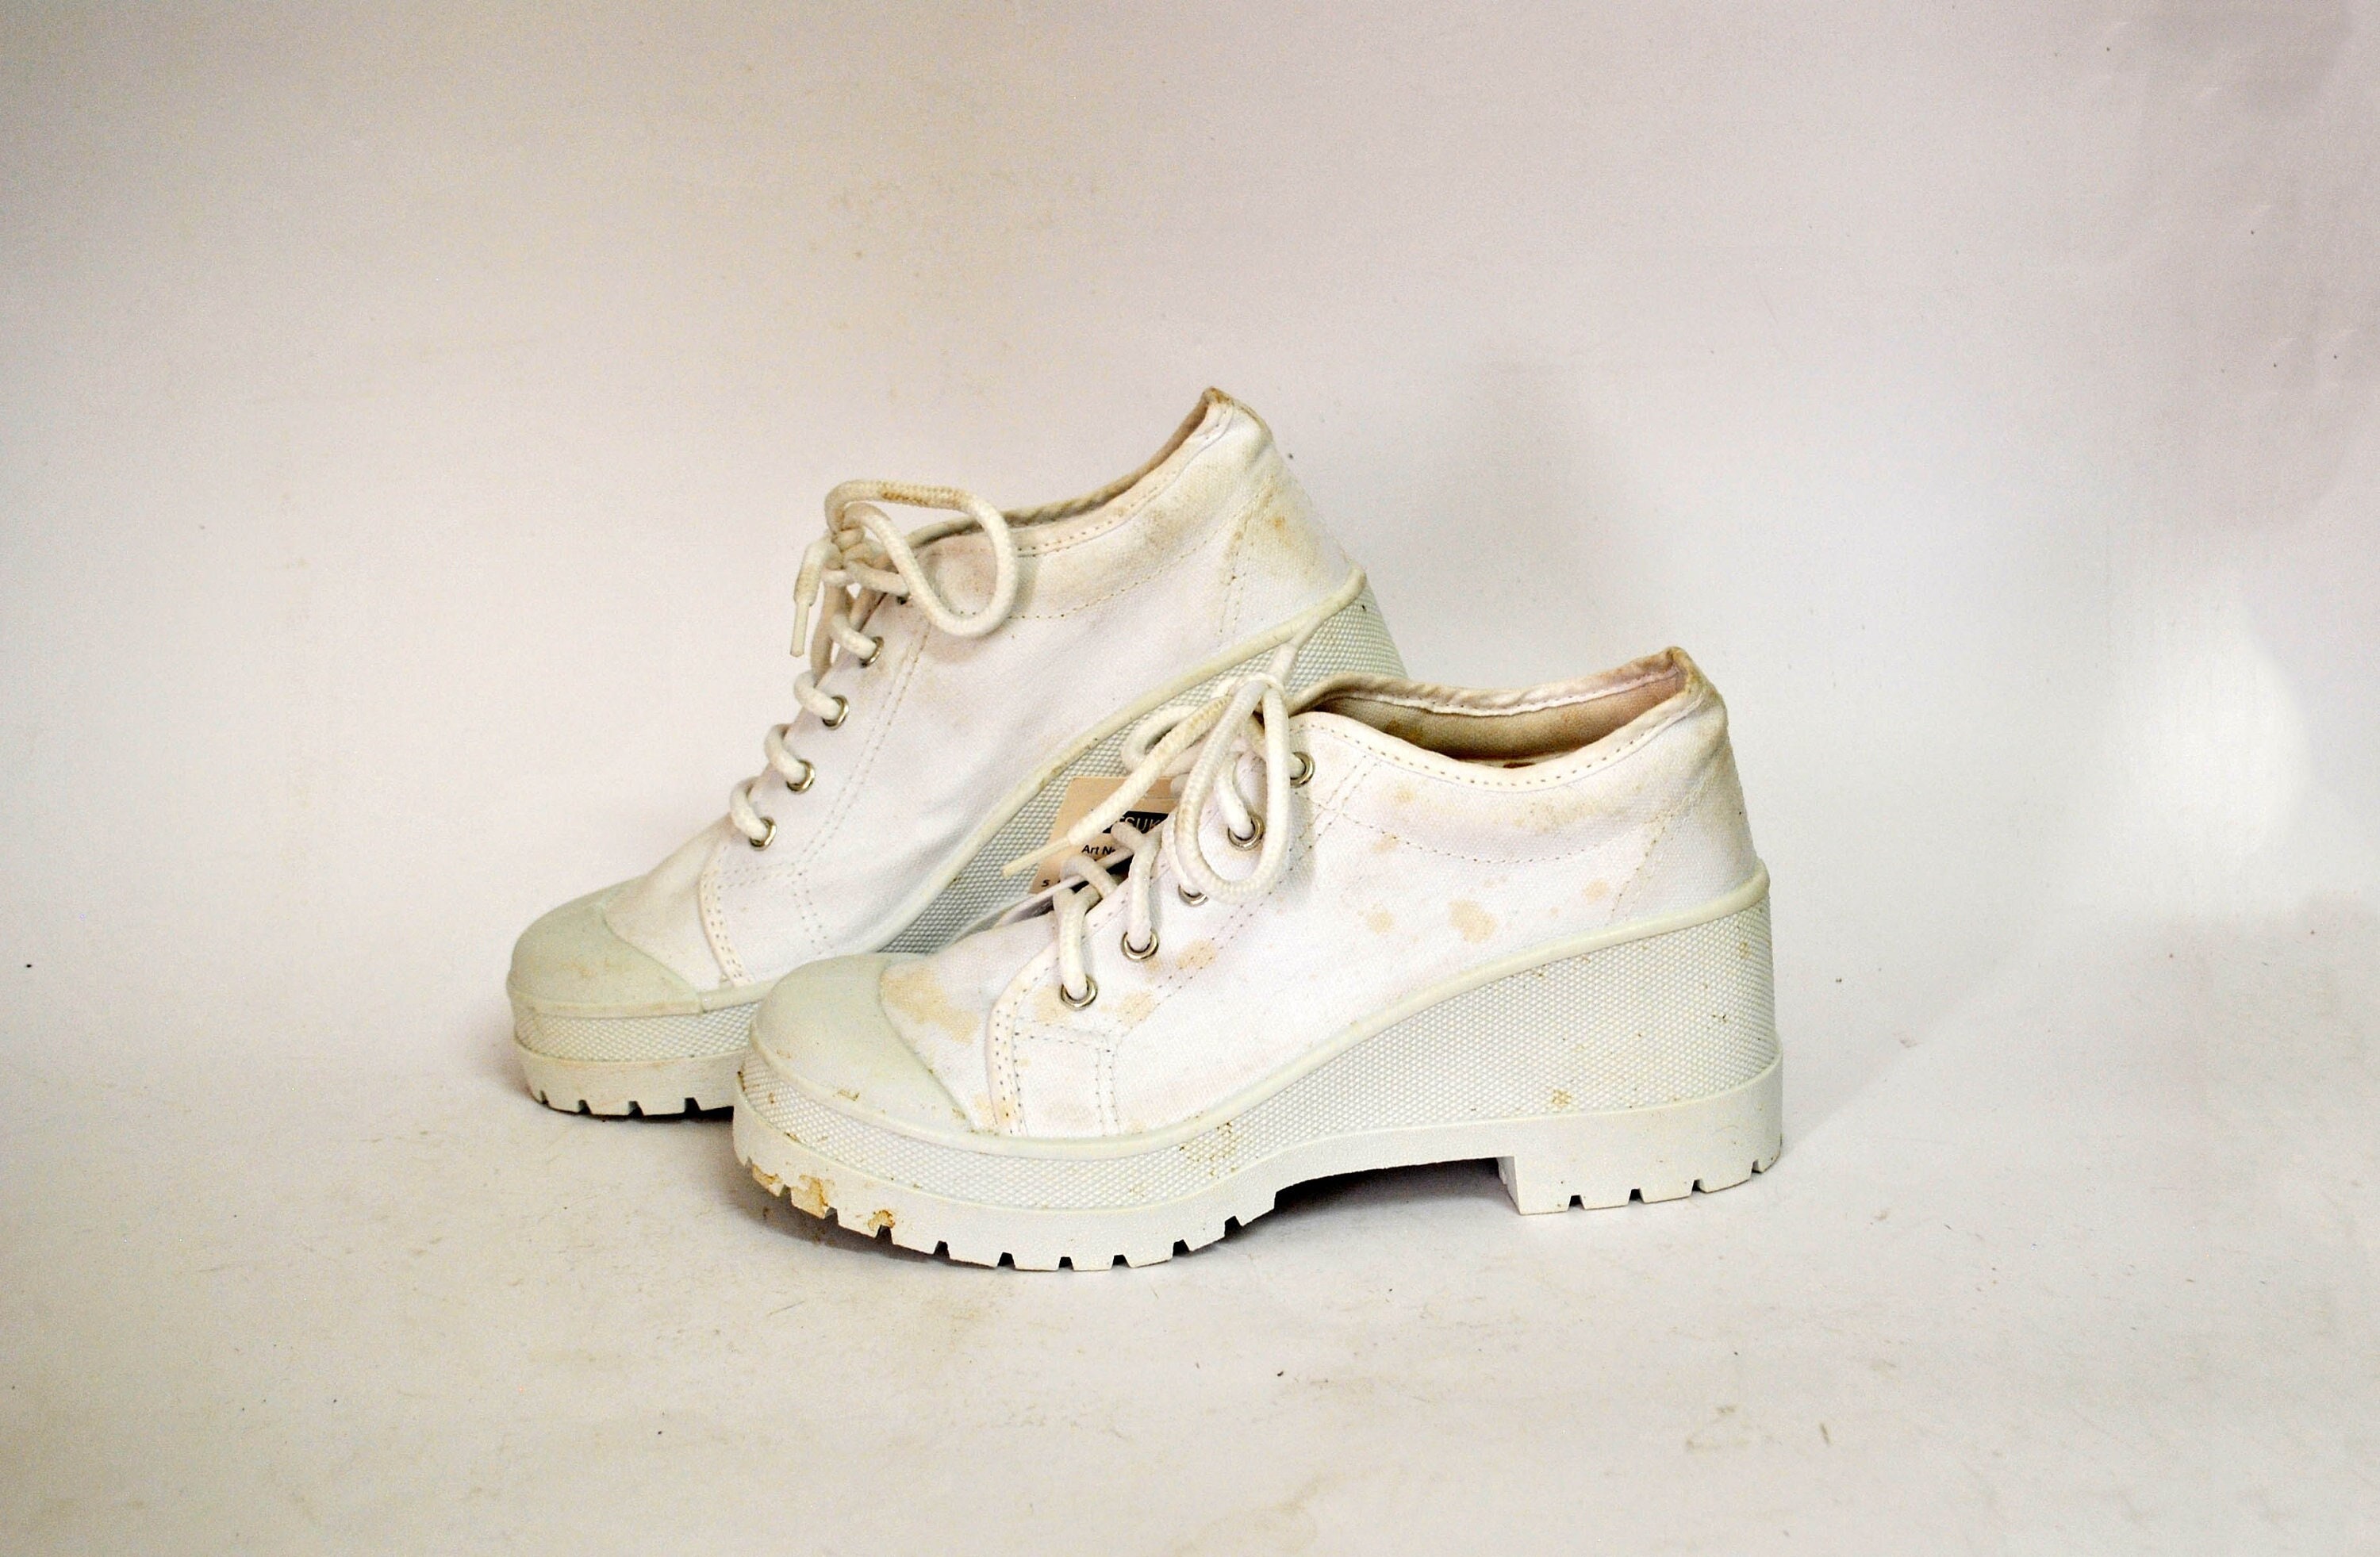 White Chunky Sneakers - Platform Sneakers - '90s Sneakers - Lulus